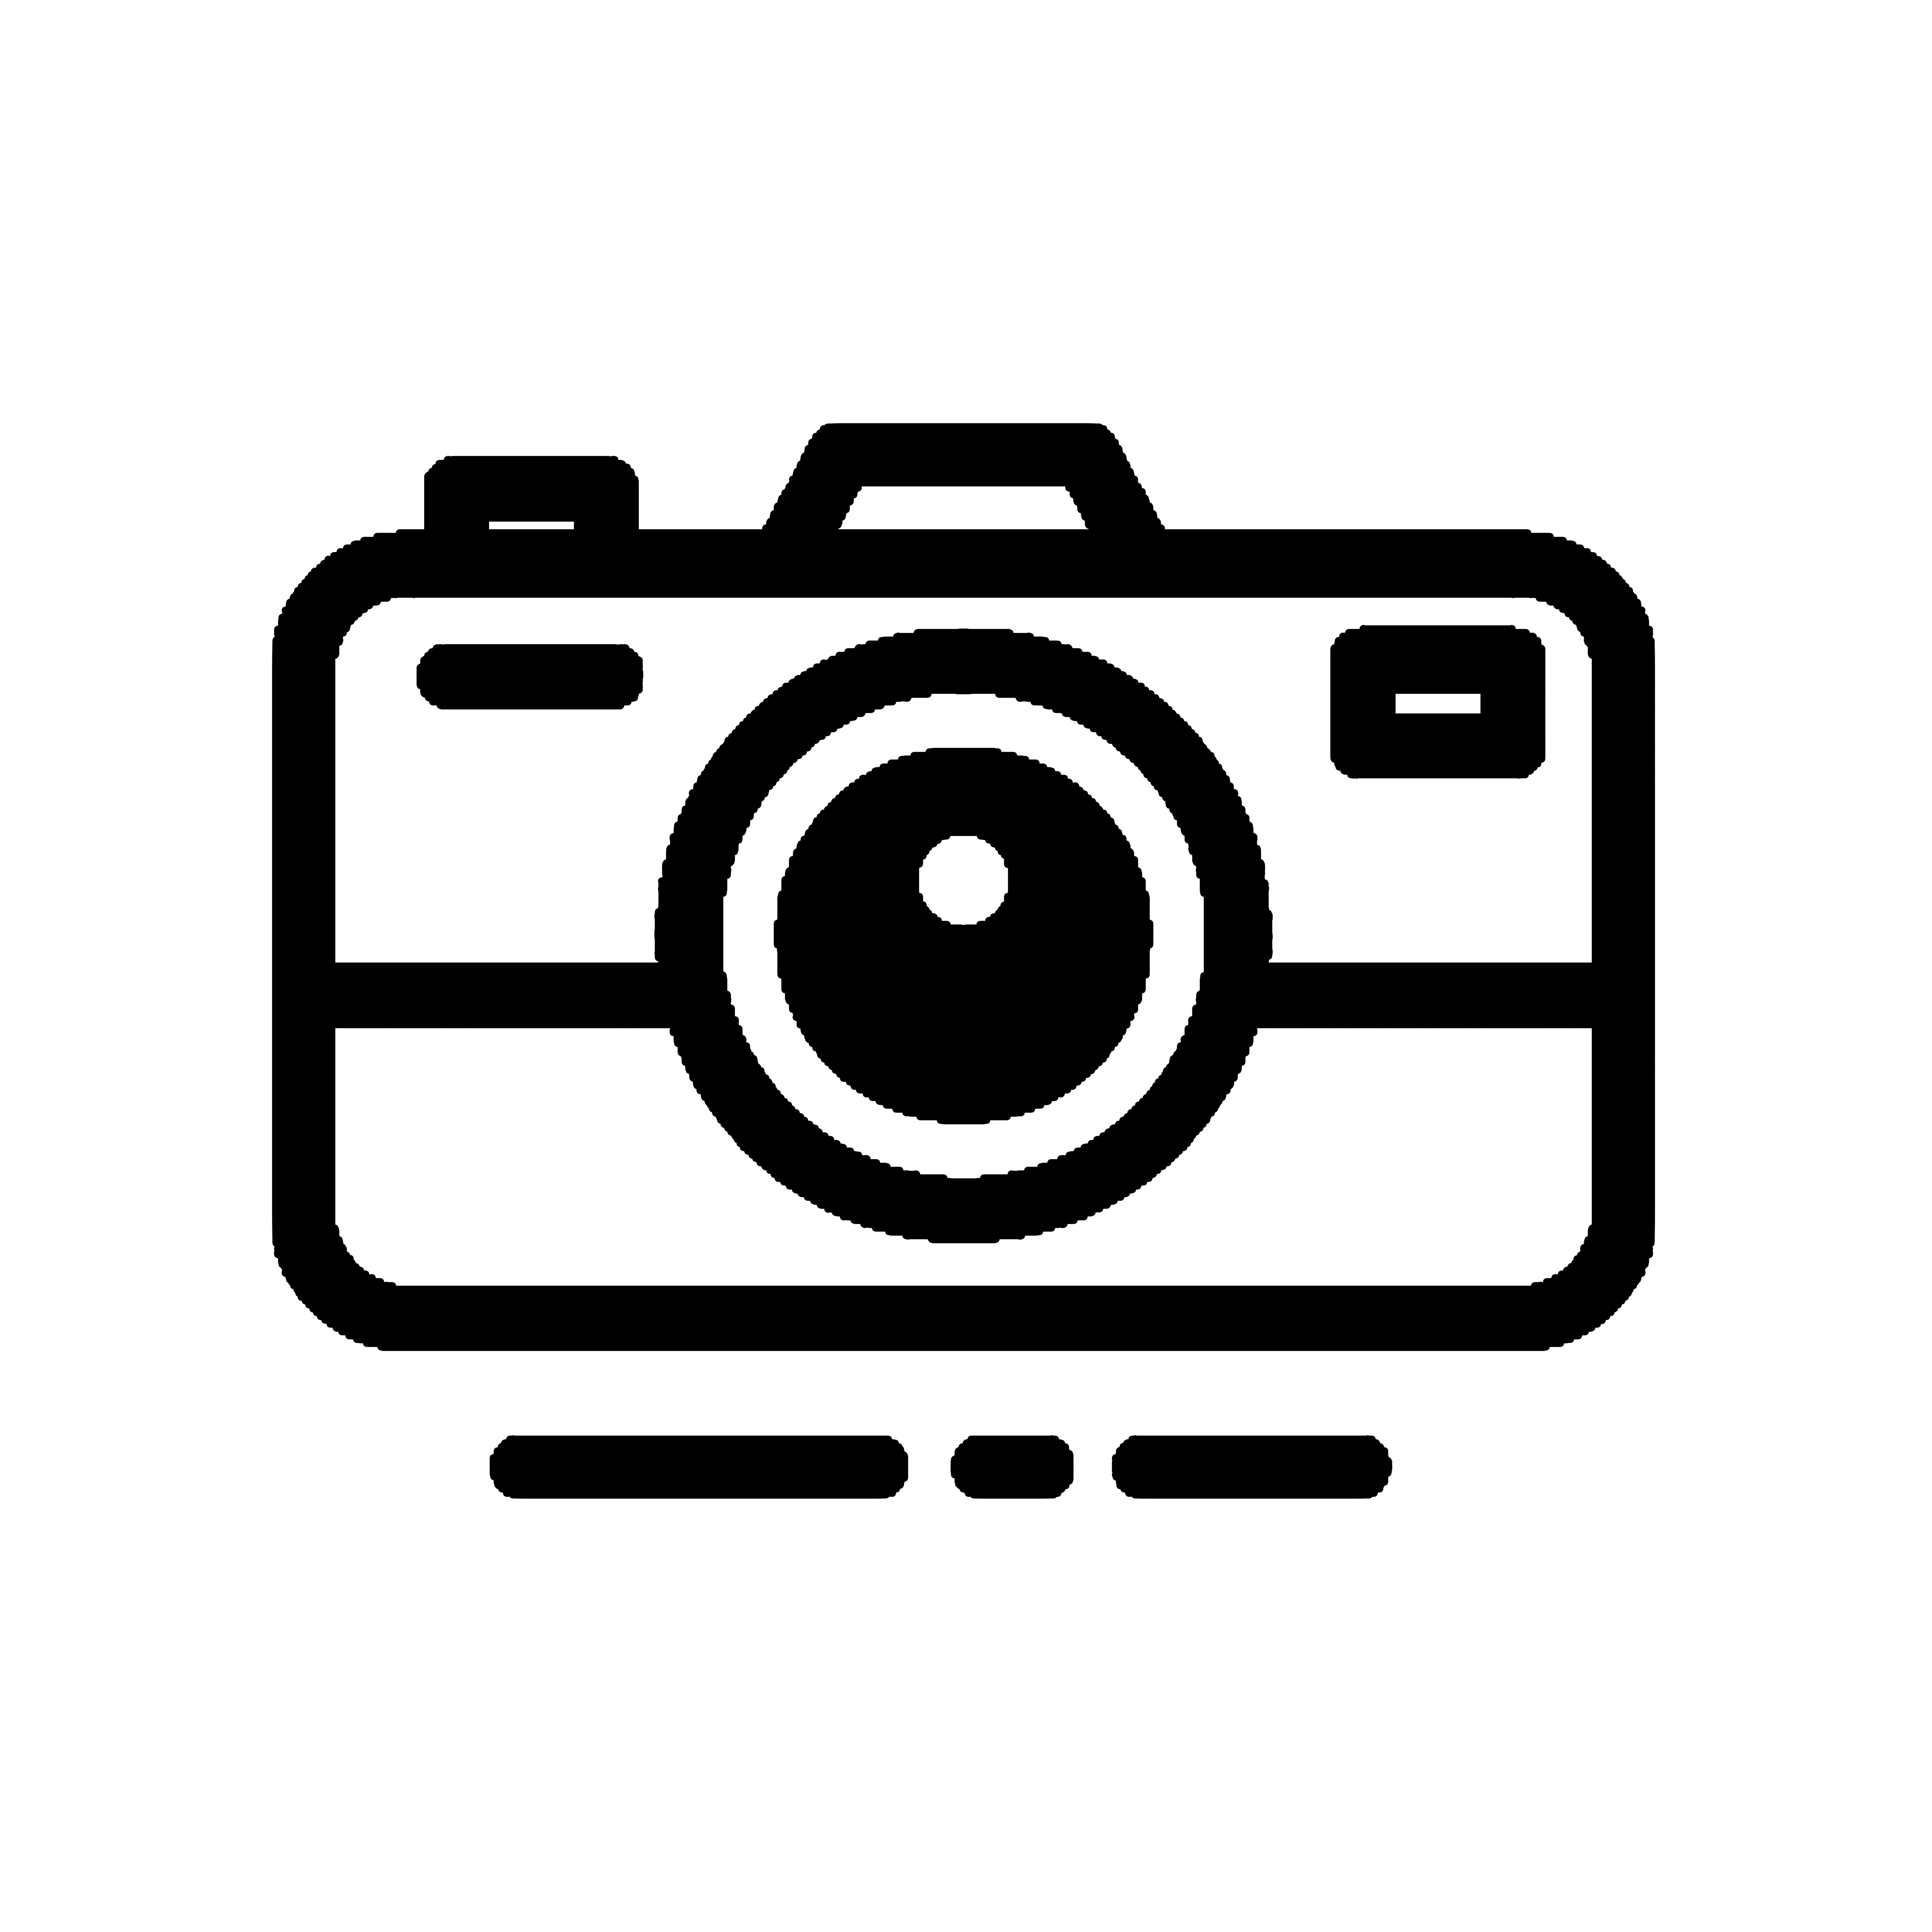 photograph logo